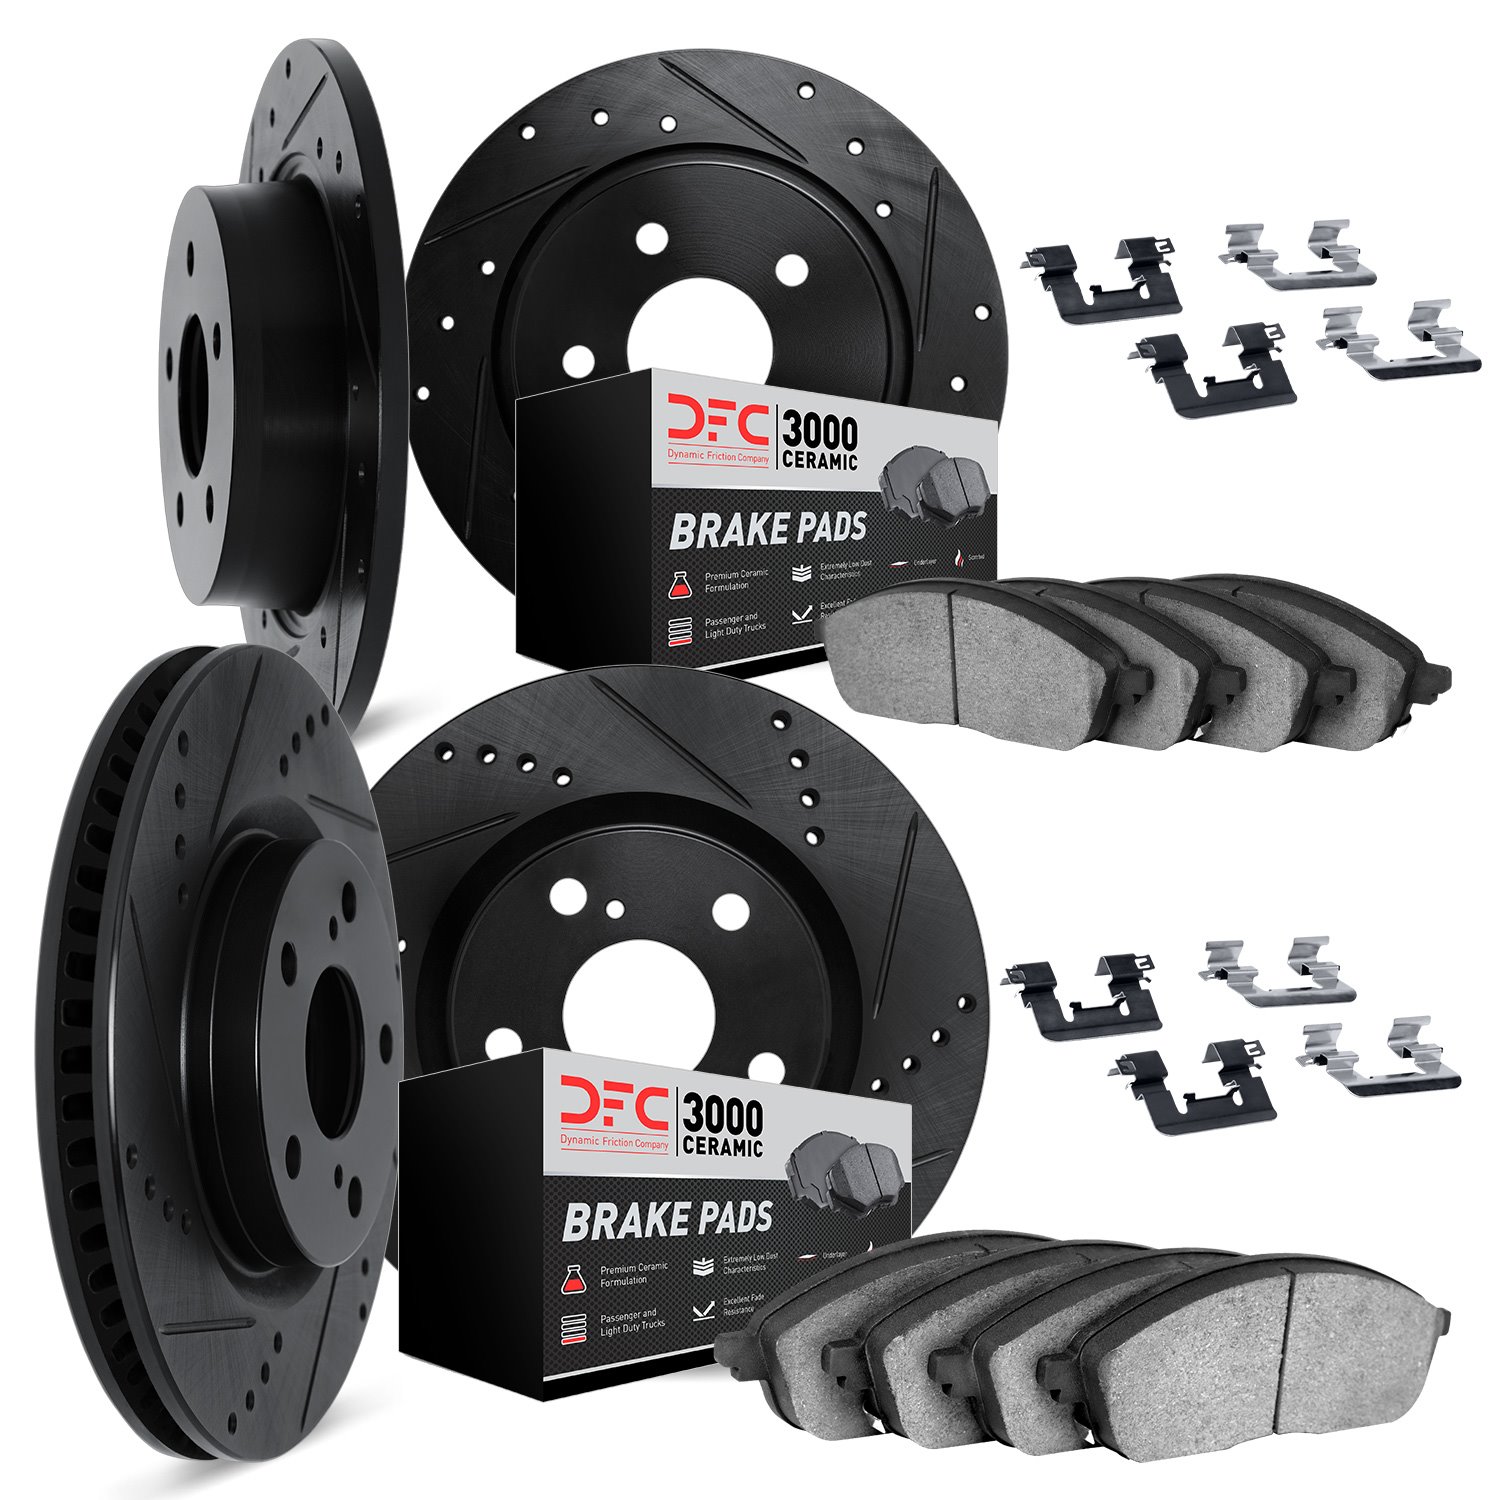 8314-72037 Drilled/Slotted Brake Rotors with 3000-Series Ceramic Brake Pads Kit & Hardware [Black], 2004-2012 Mitsubishi, Positi